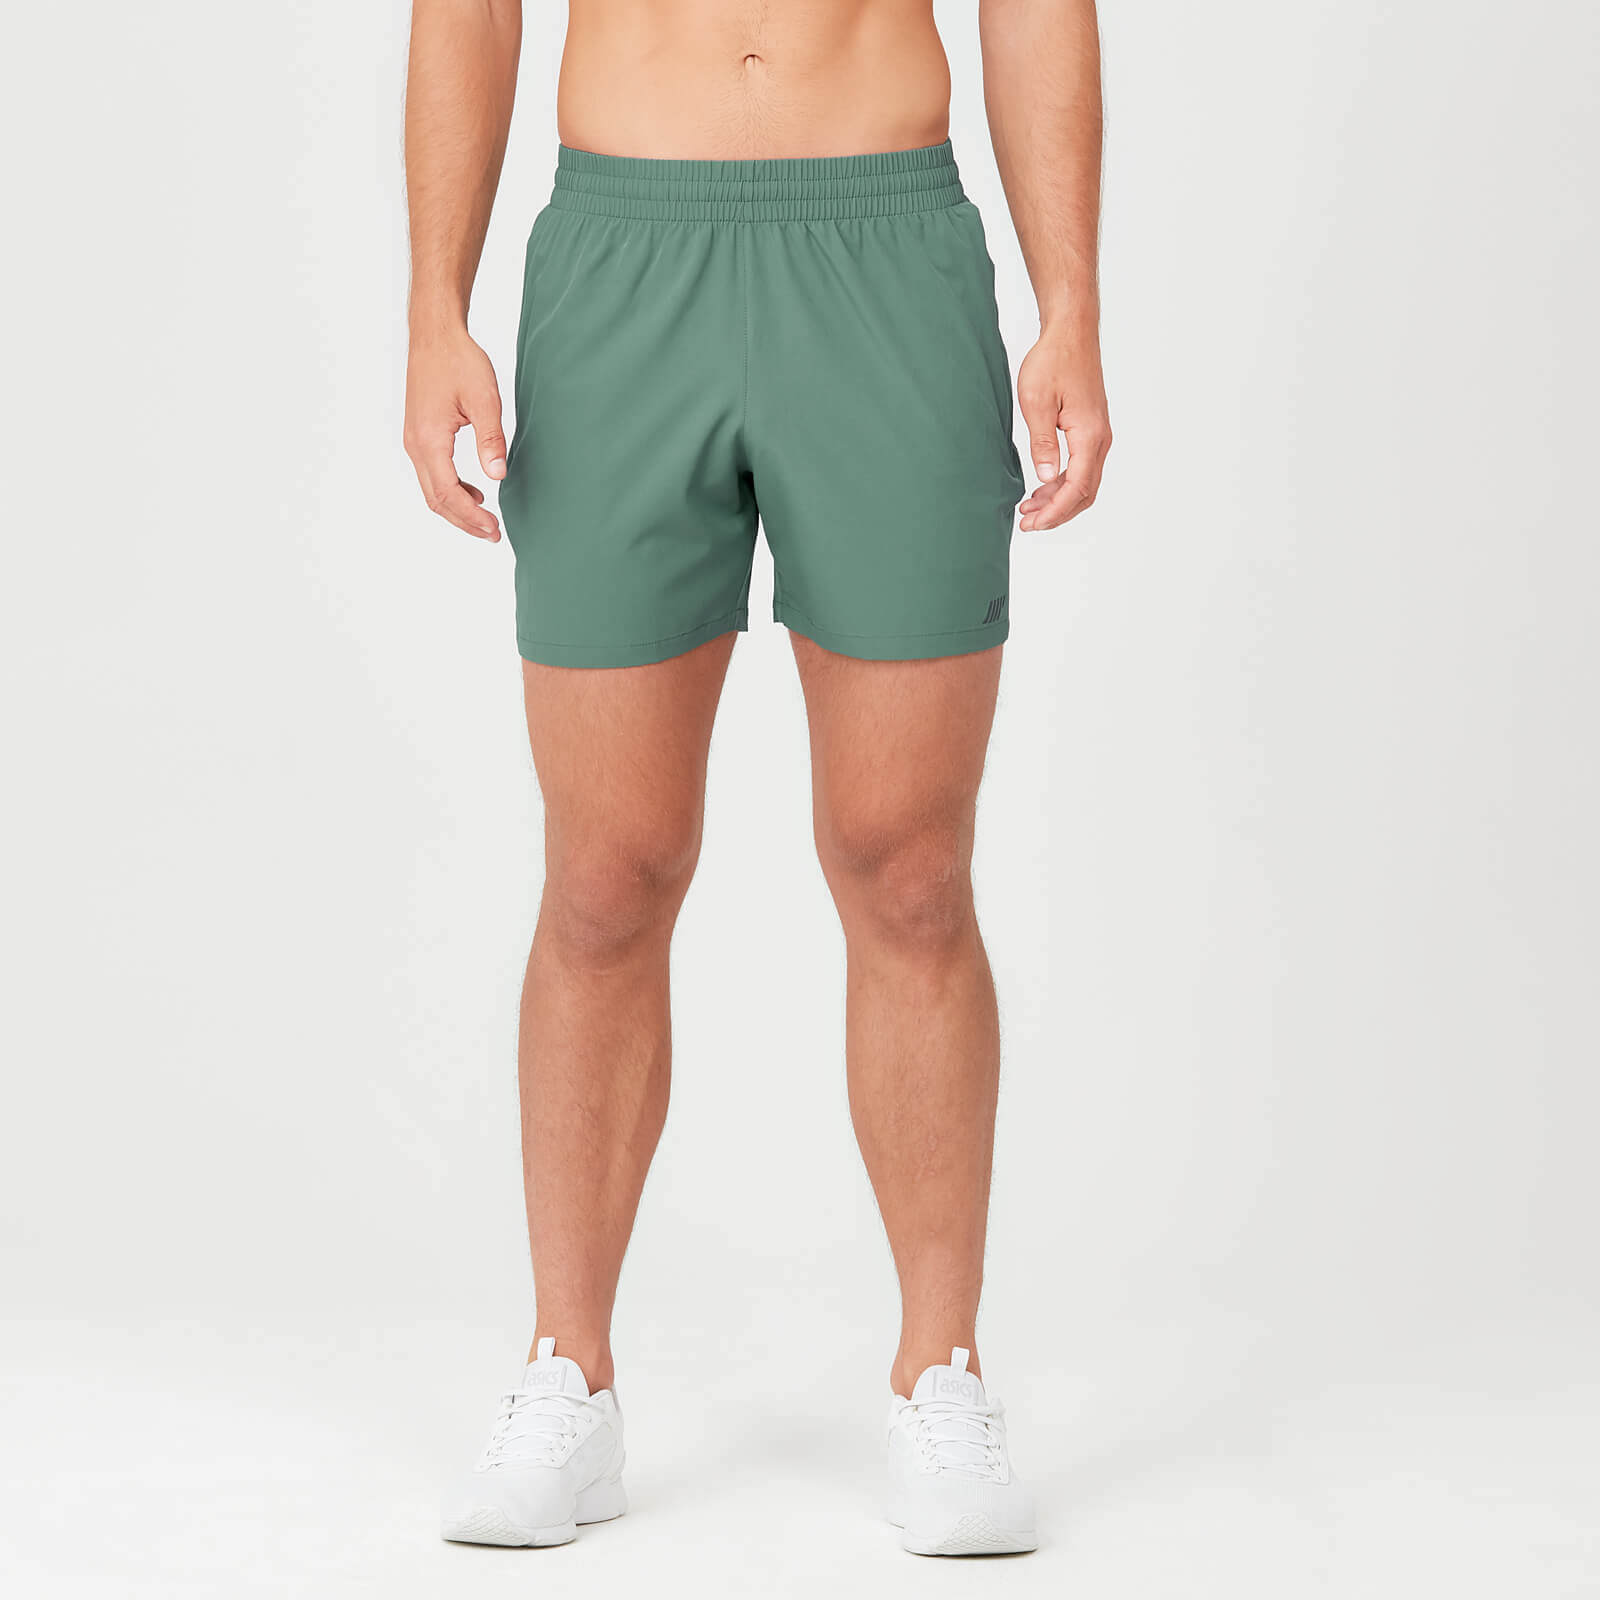 Sprint kratke hlače - Zelene